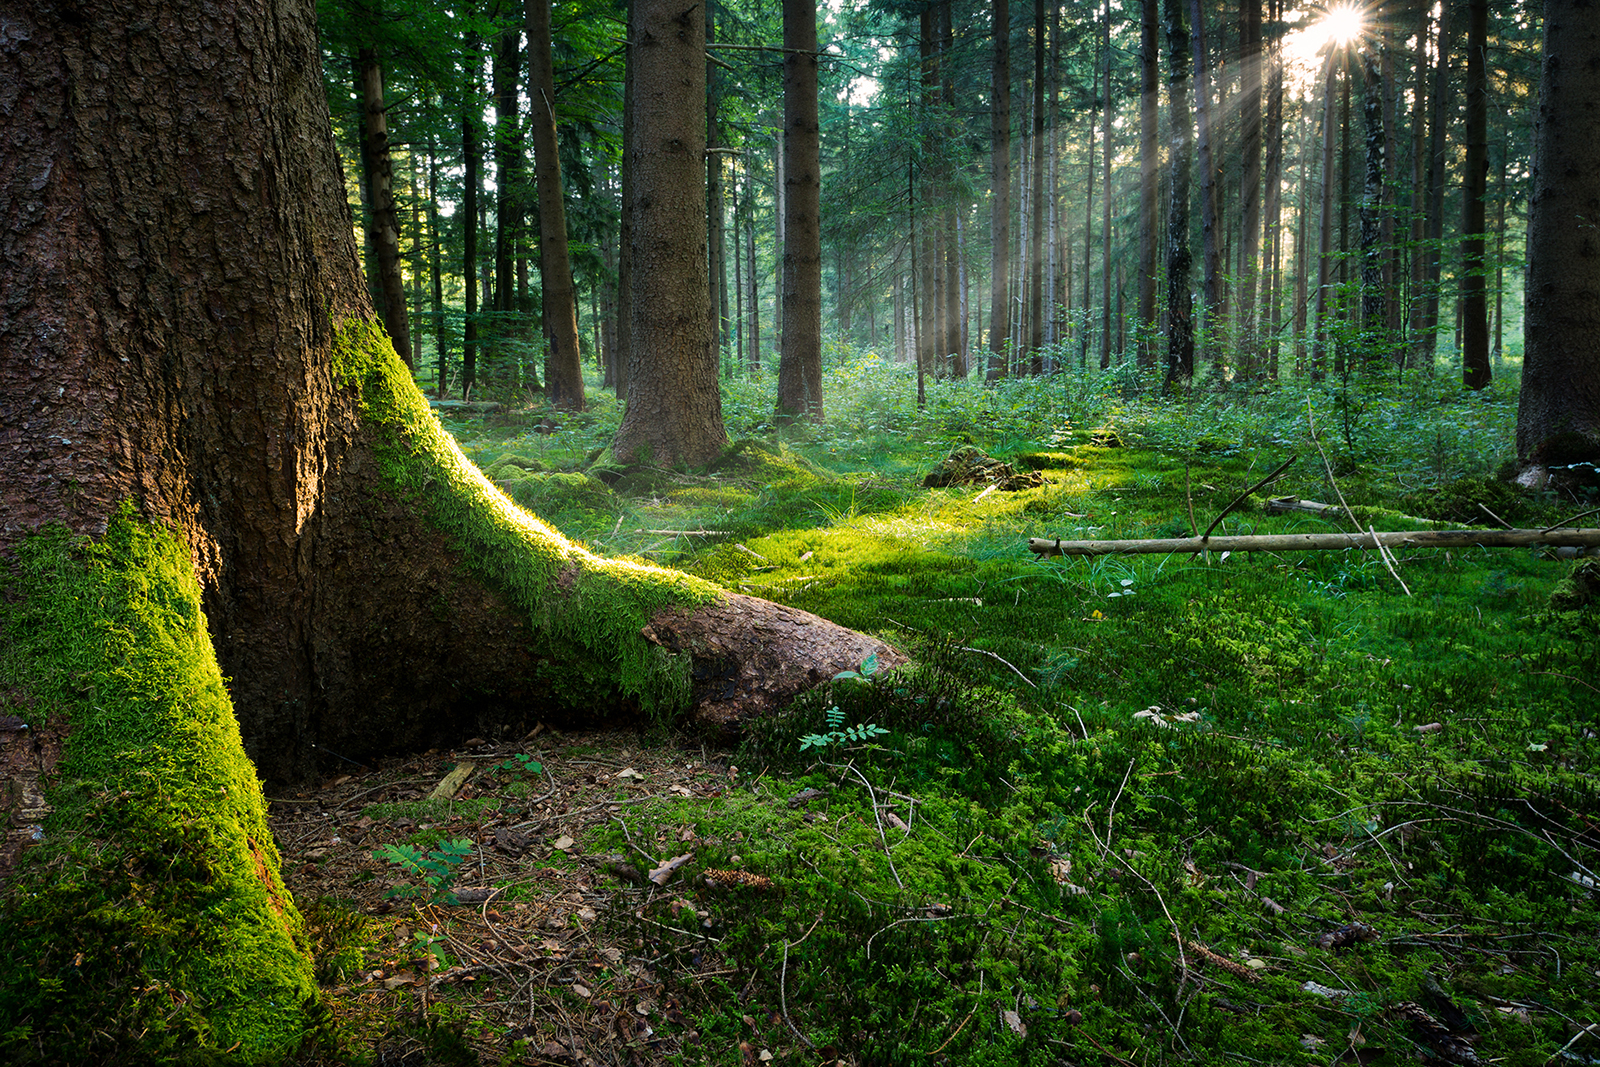 Post successivo: Gestione Forestale Responsabile: ultimi giorni per la consultazione